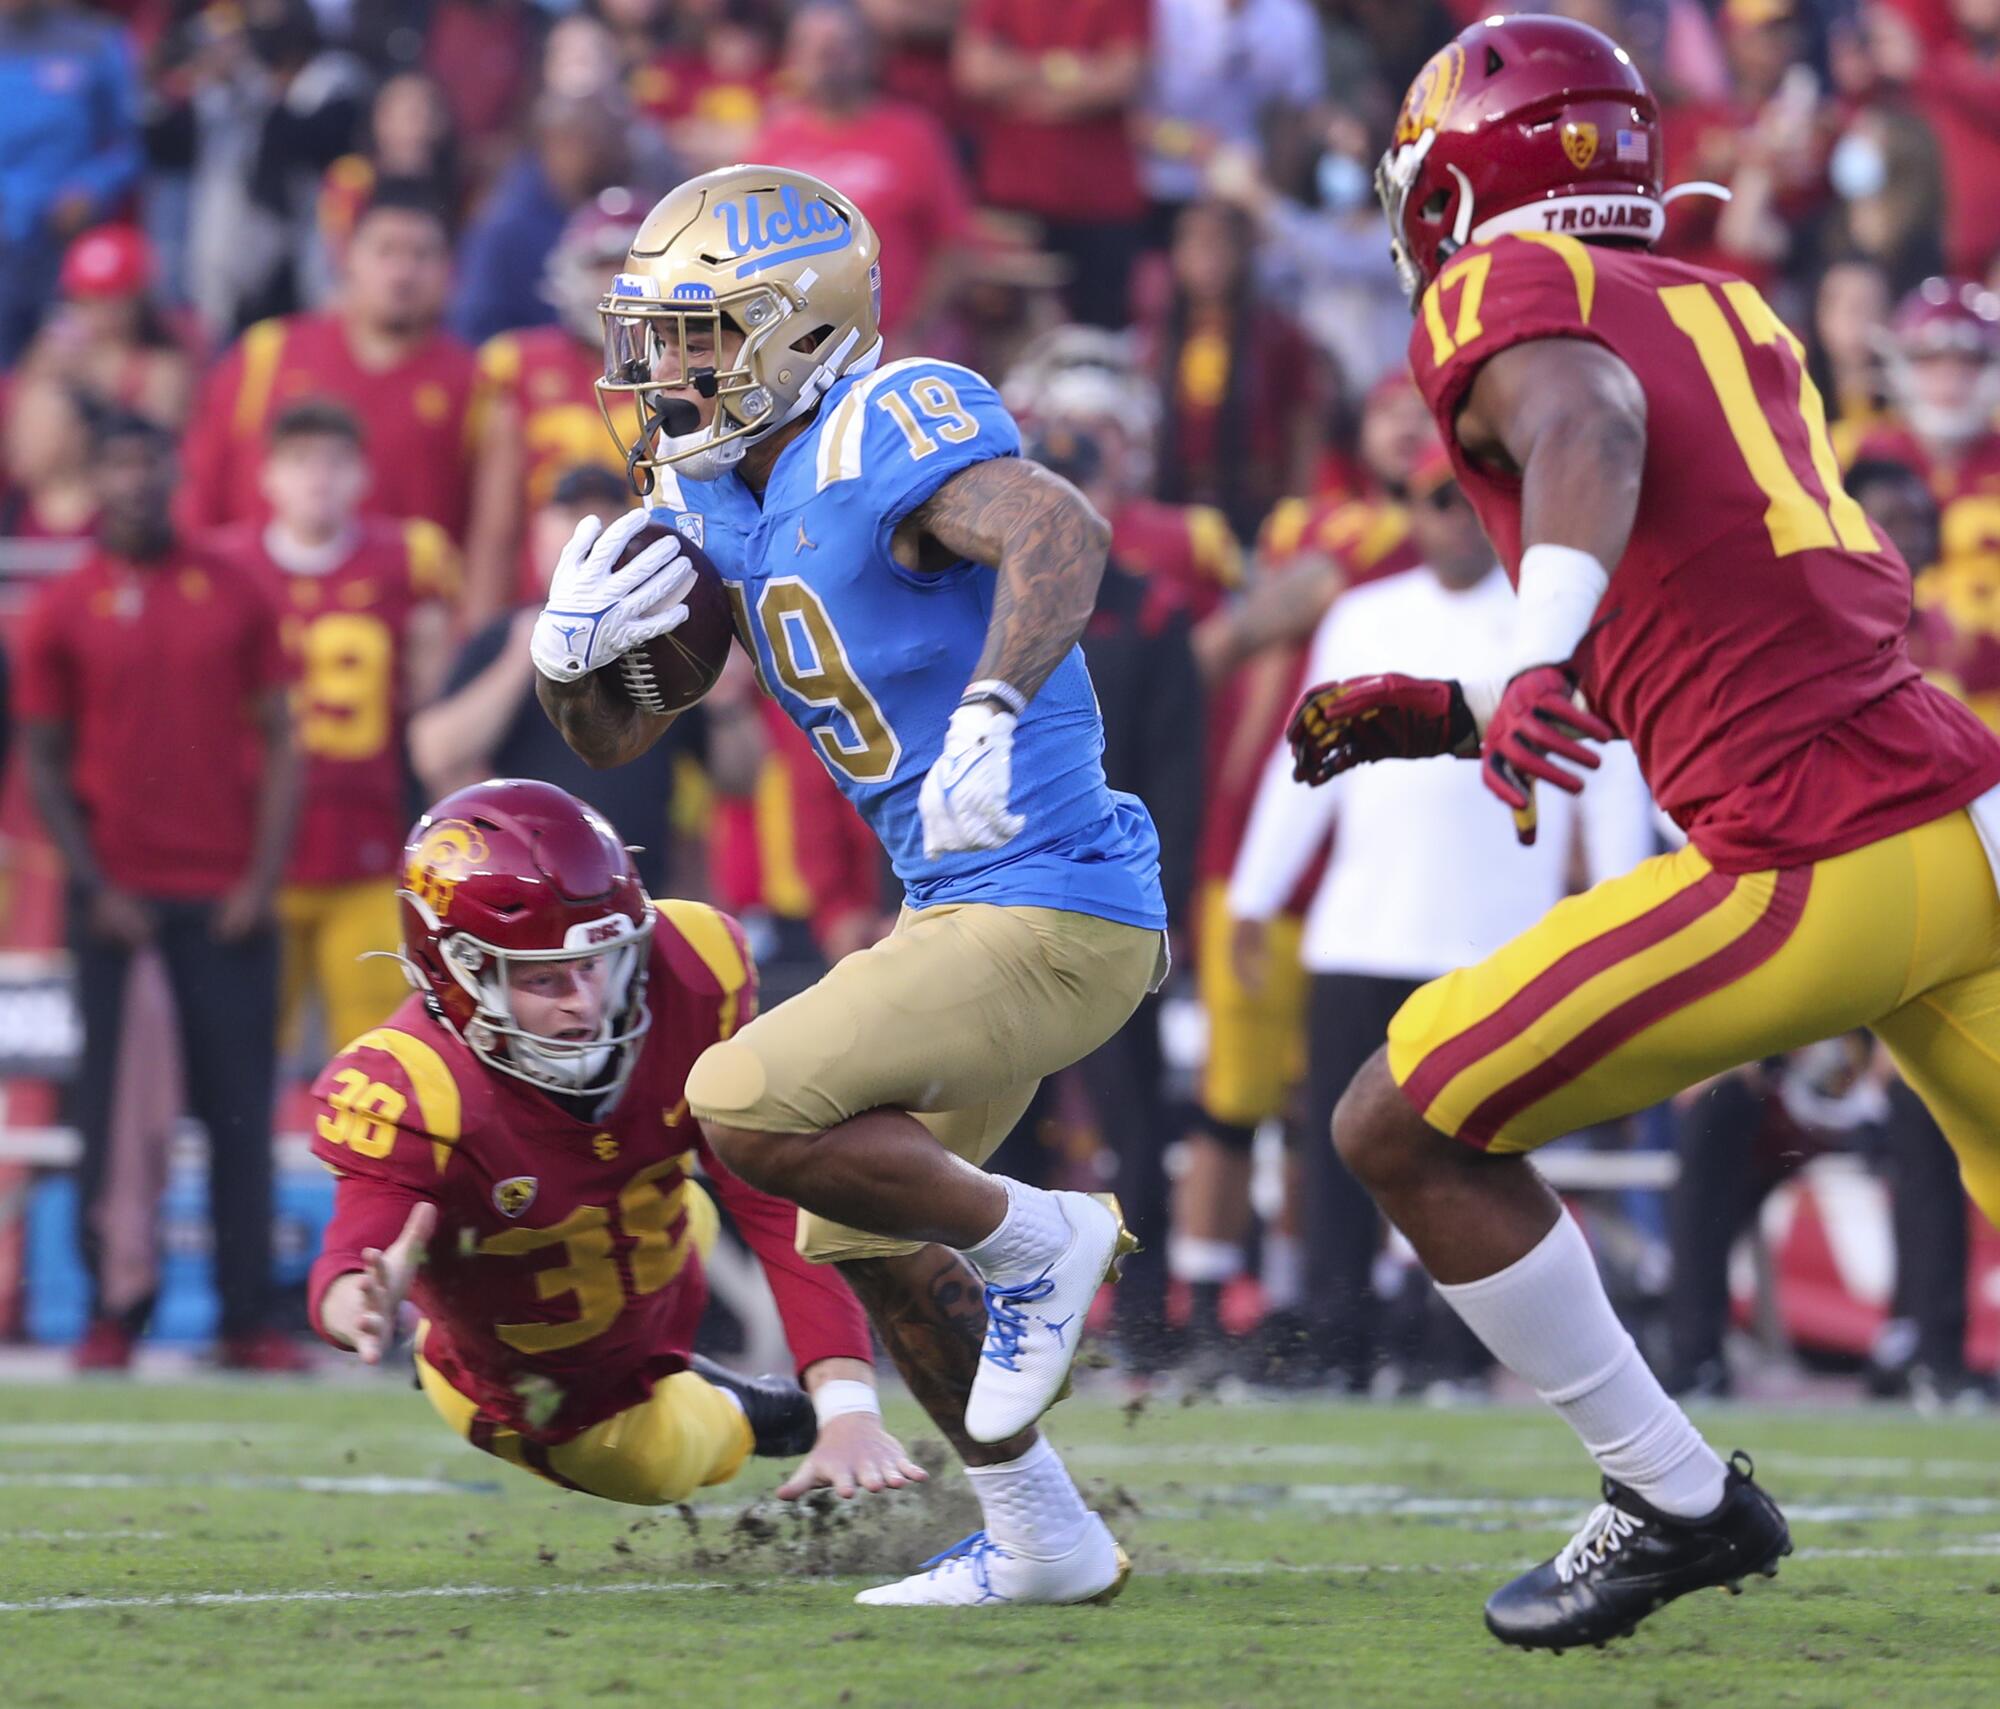  UCLA's Kazmeir Allen returns a kickoff for a touchdown.